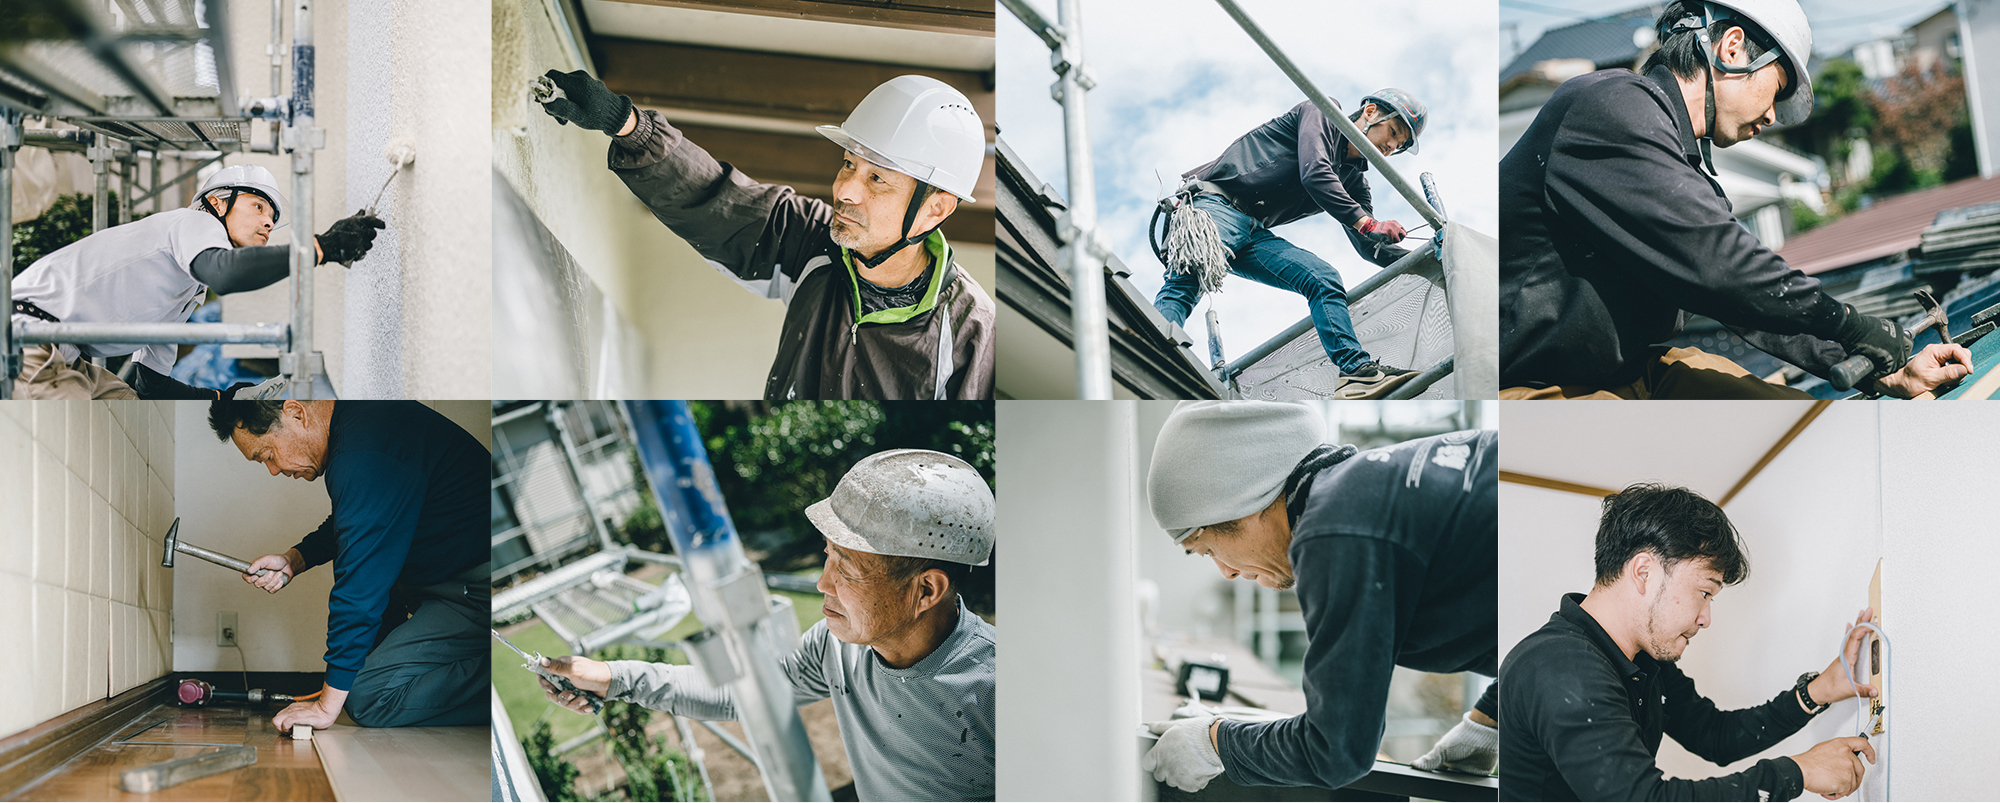 熊本県建物環境改善協会の職人たち